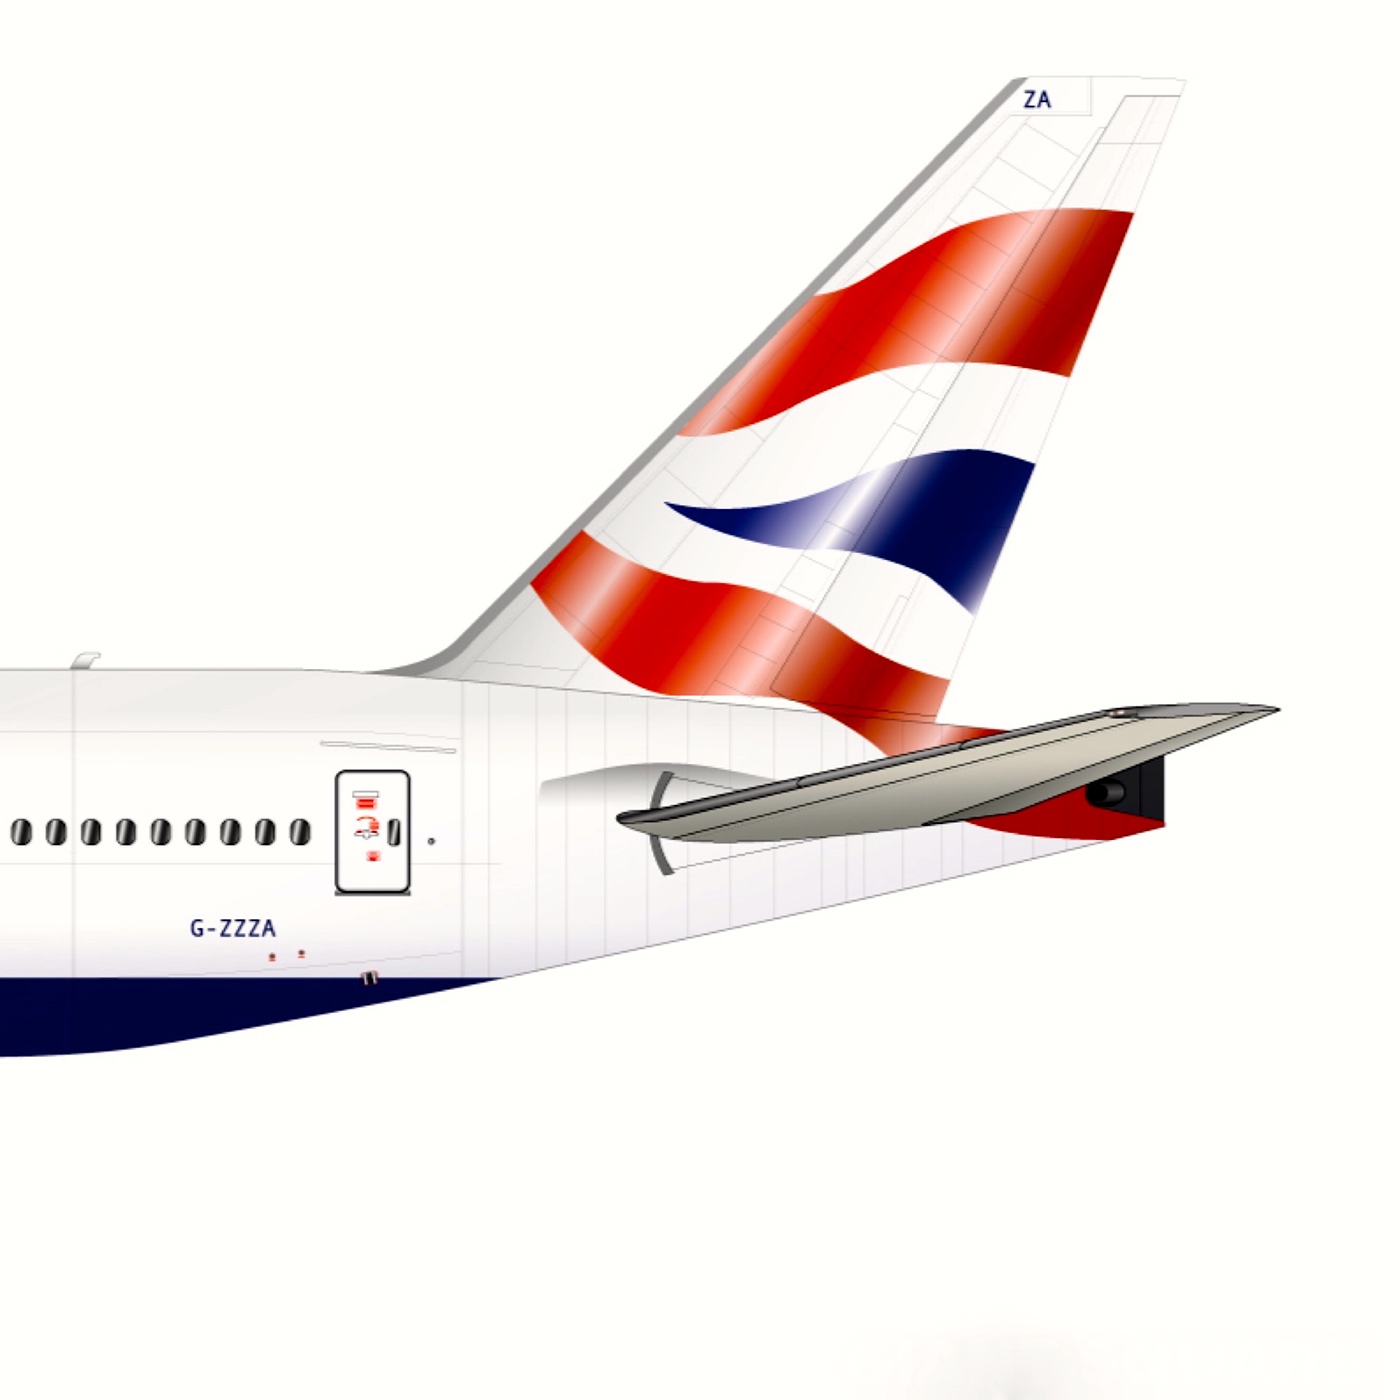 Airplane Boeing 777 Boeing777 British Airways